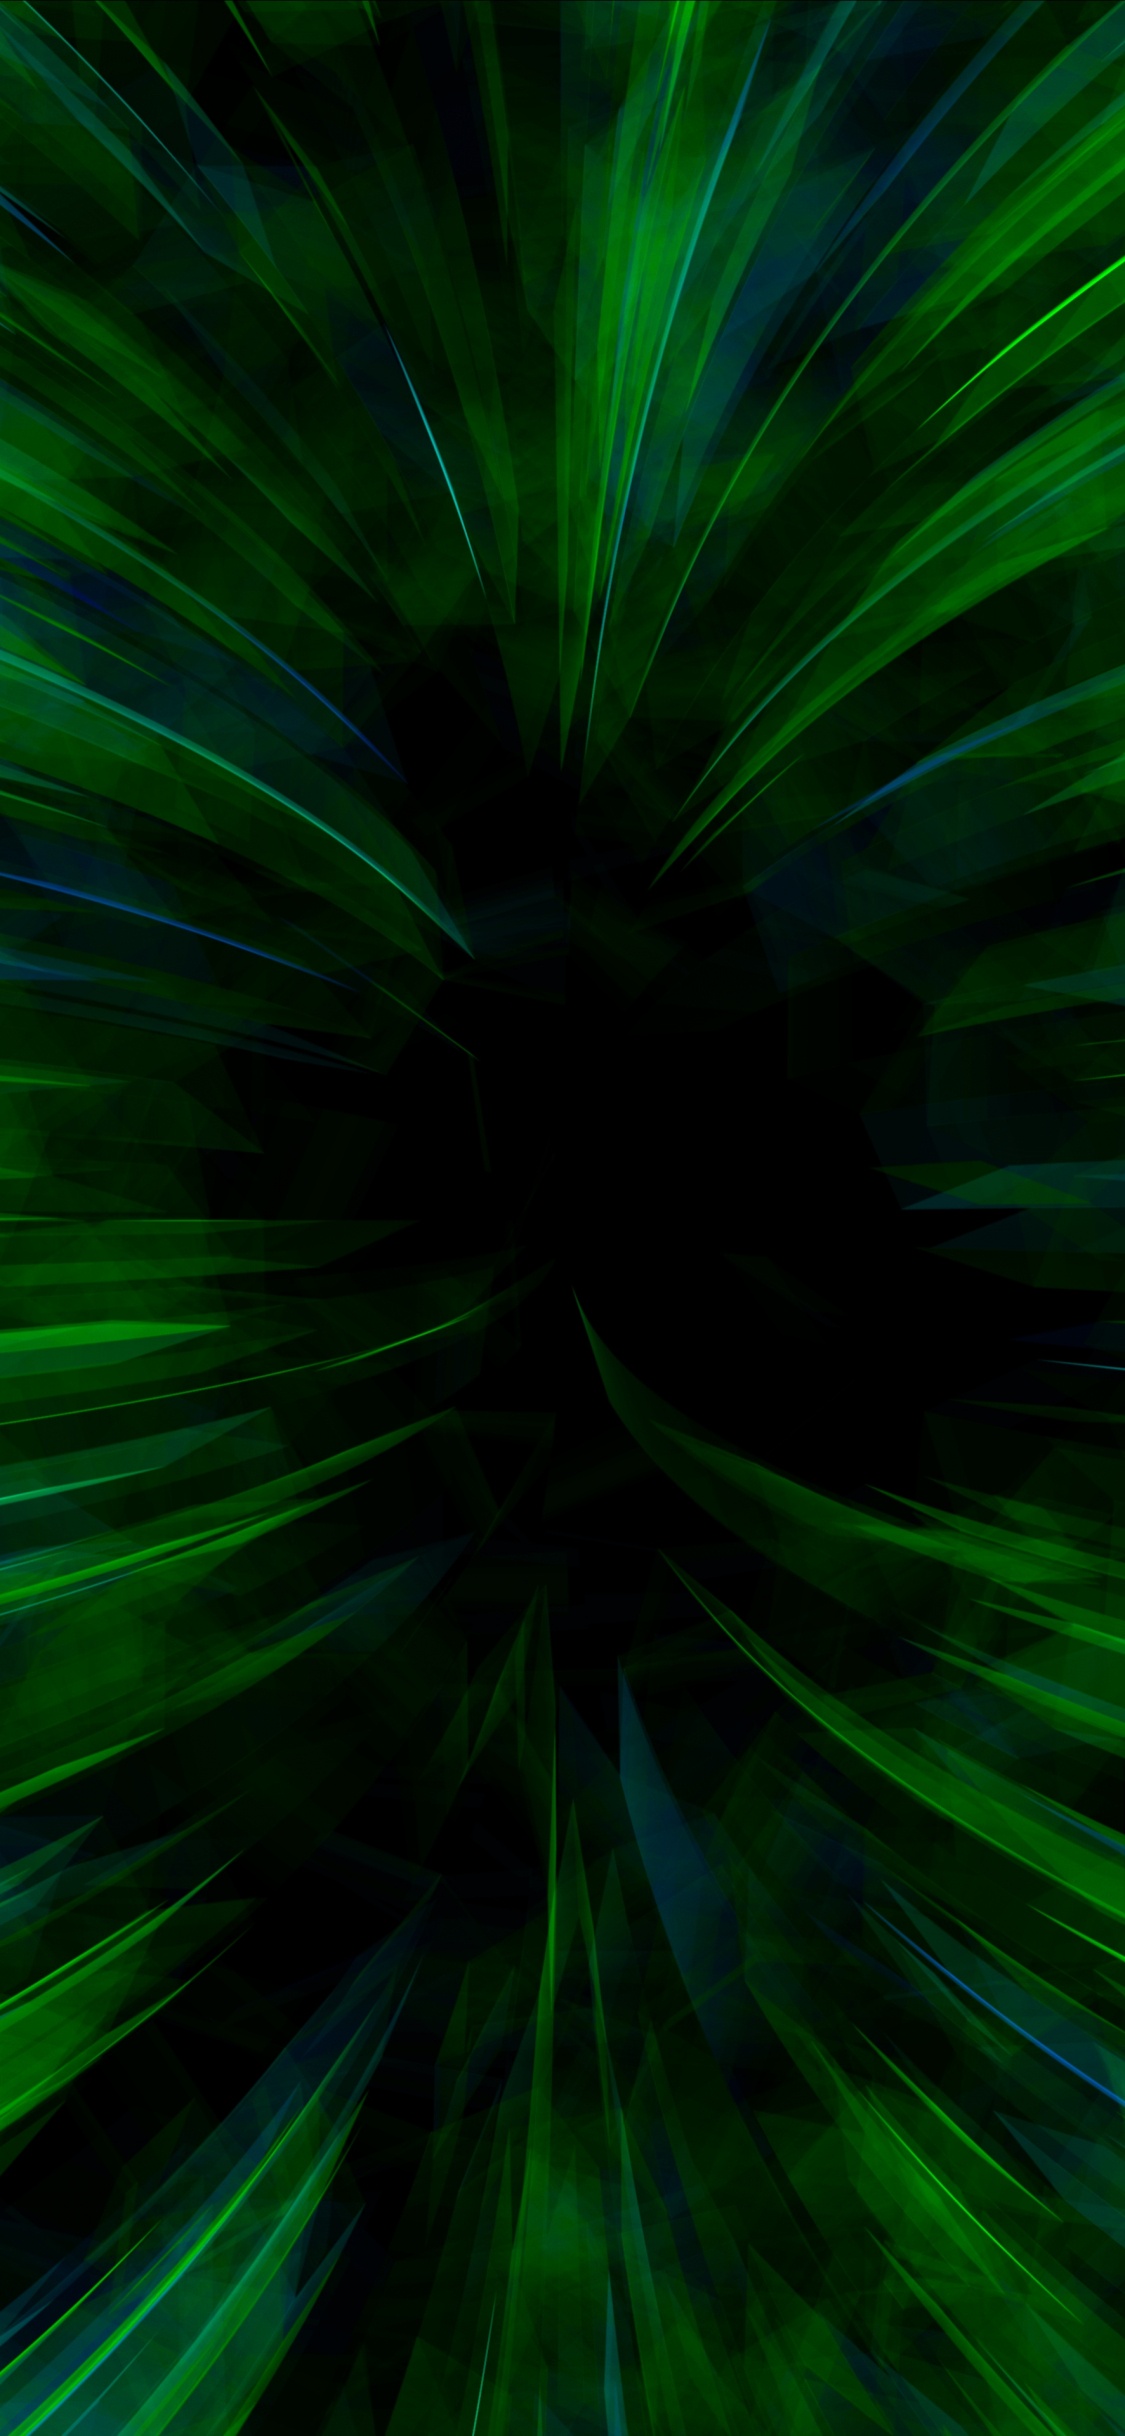 Papel Tapiz Digital de Luz Verde y Blanca. Wallpaper in 1125x2436 Resolution